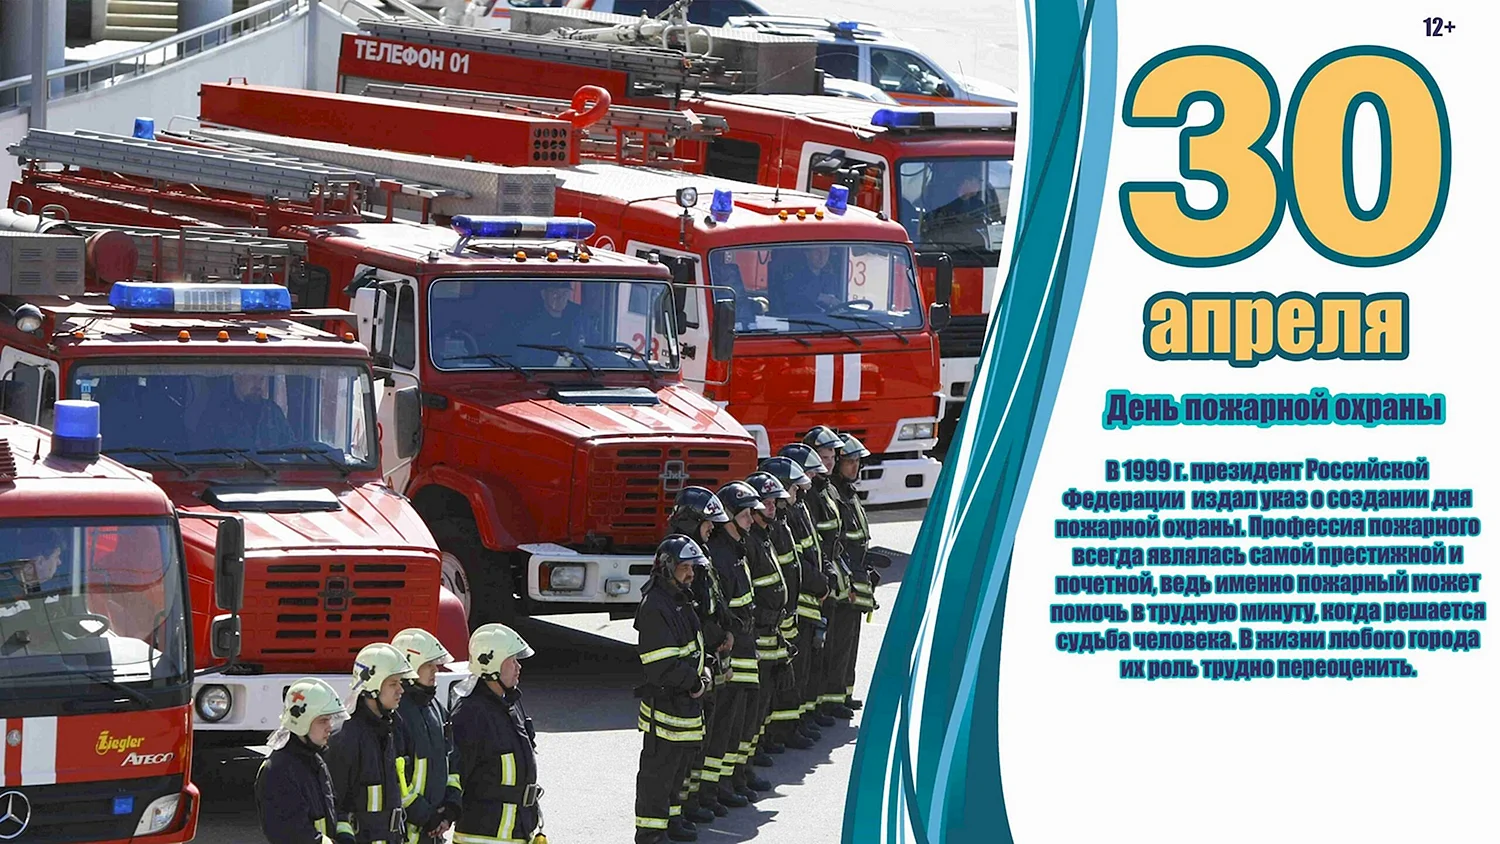 30 Апреля день пожарной охраны России